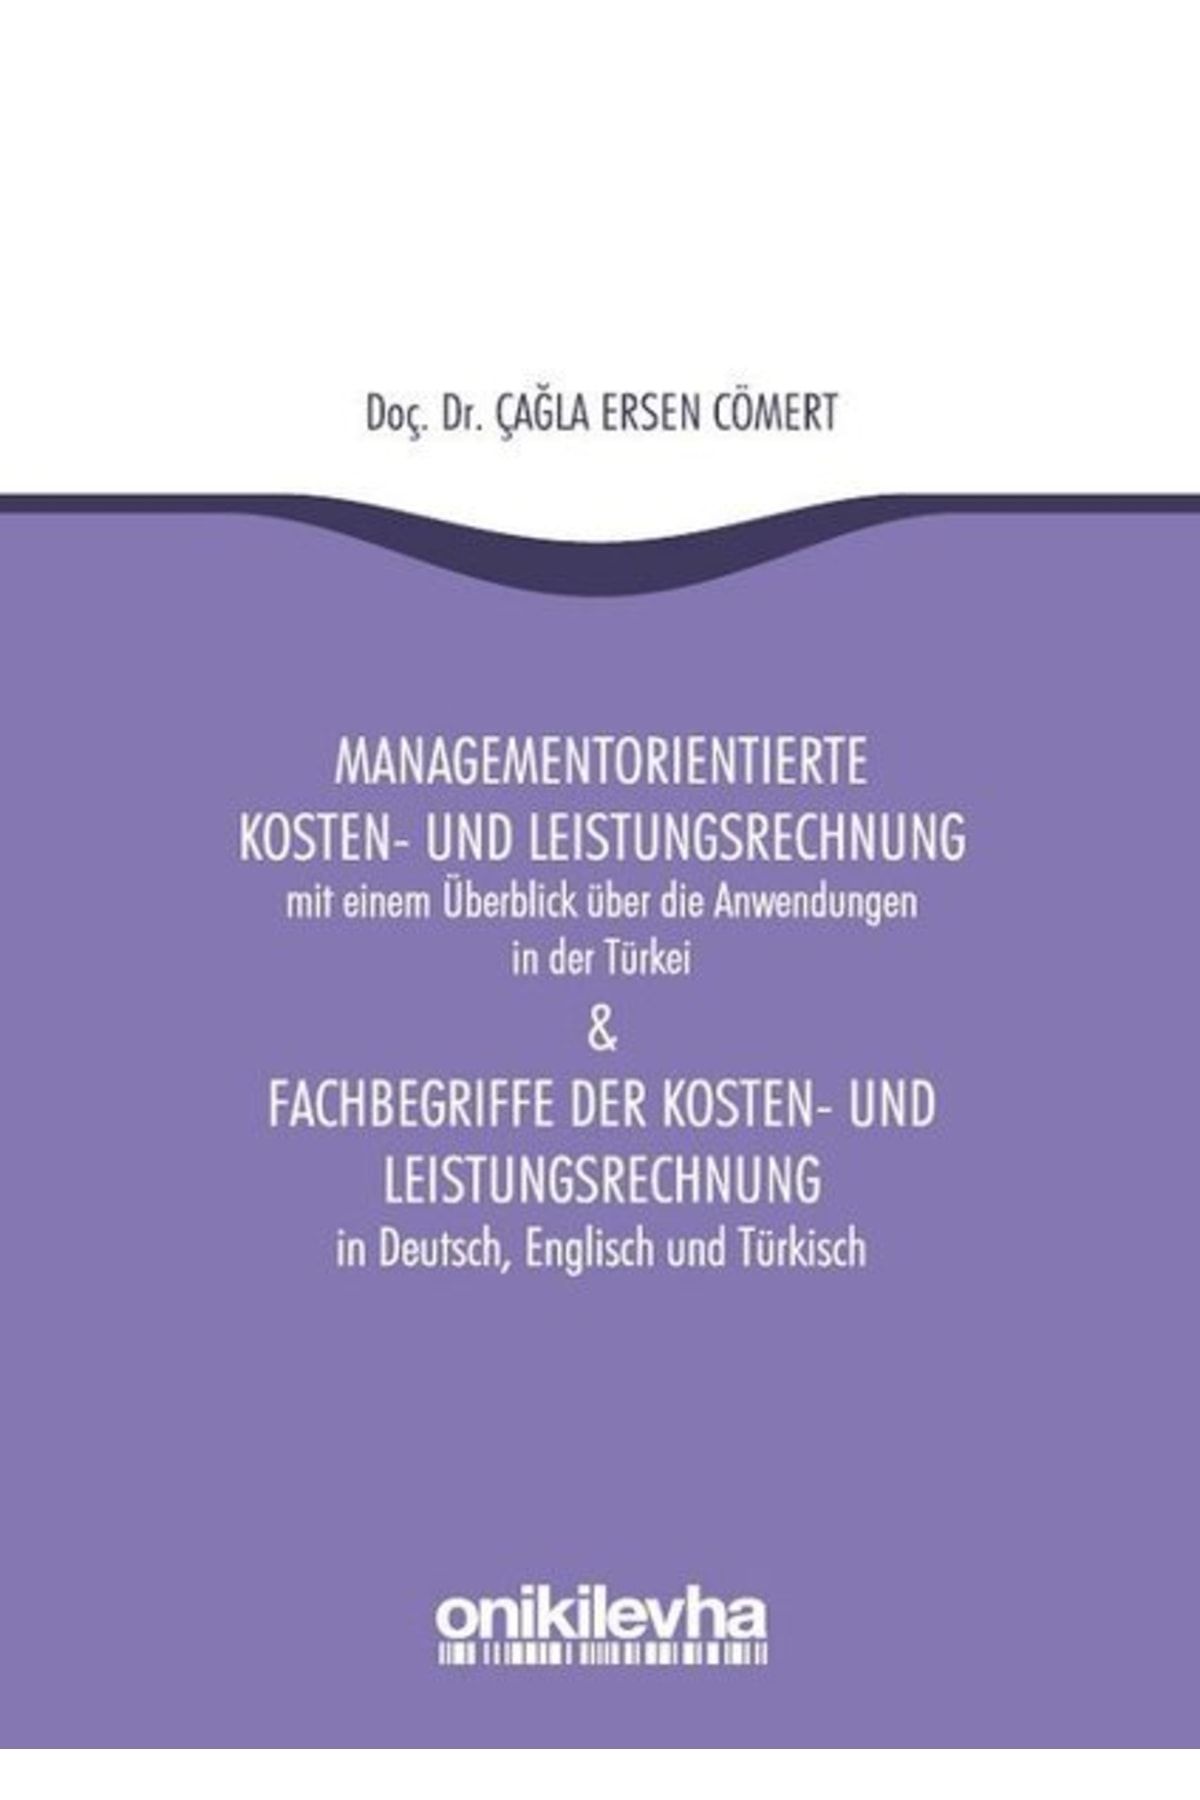 On İki Levha Yayıncılık Managementorientierte Kosten Und Leistungsrechnung And Fachbegriffe Der Kosten Und